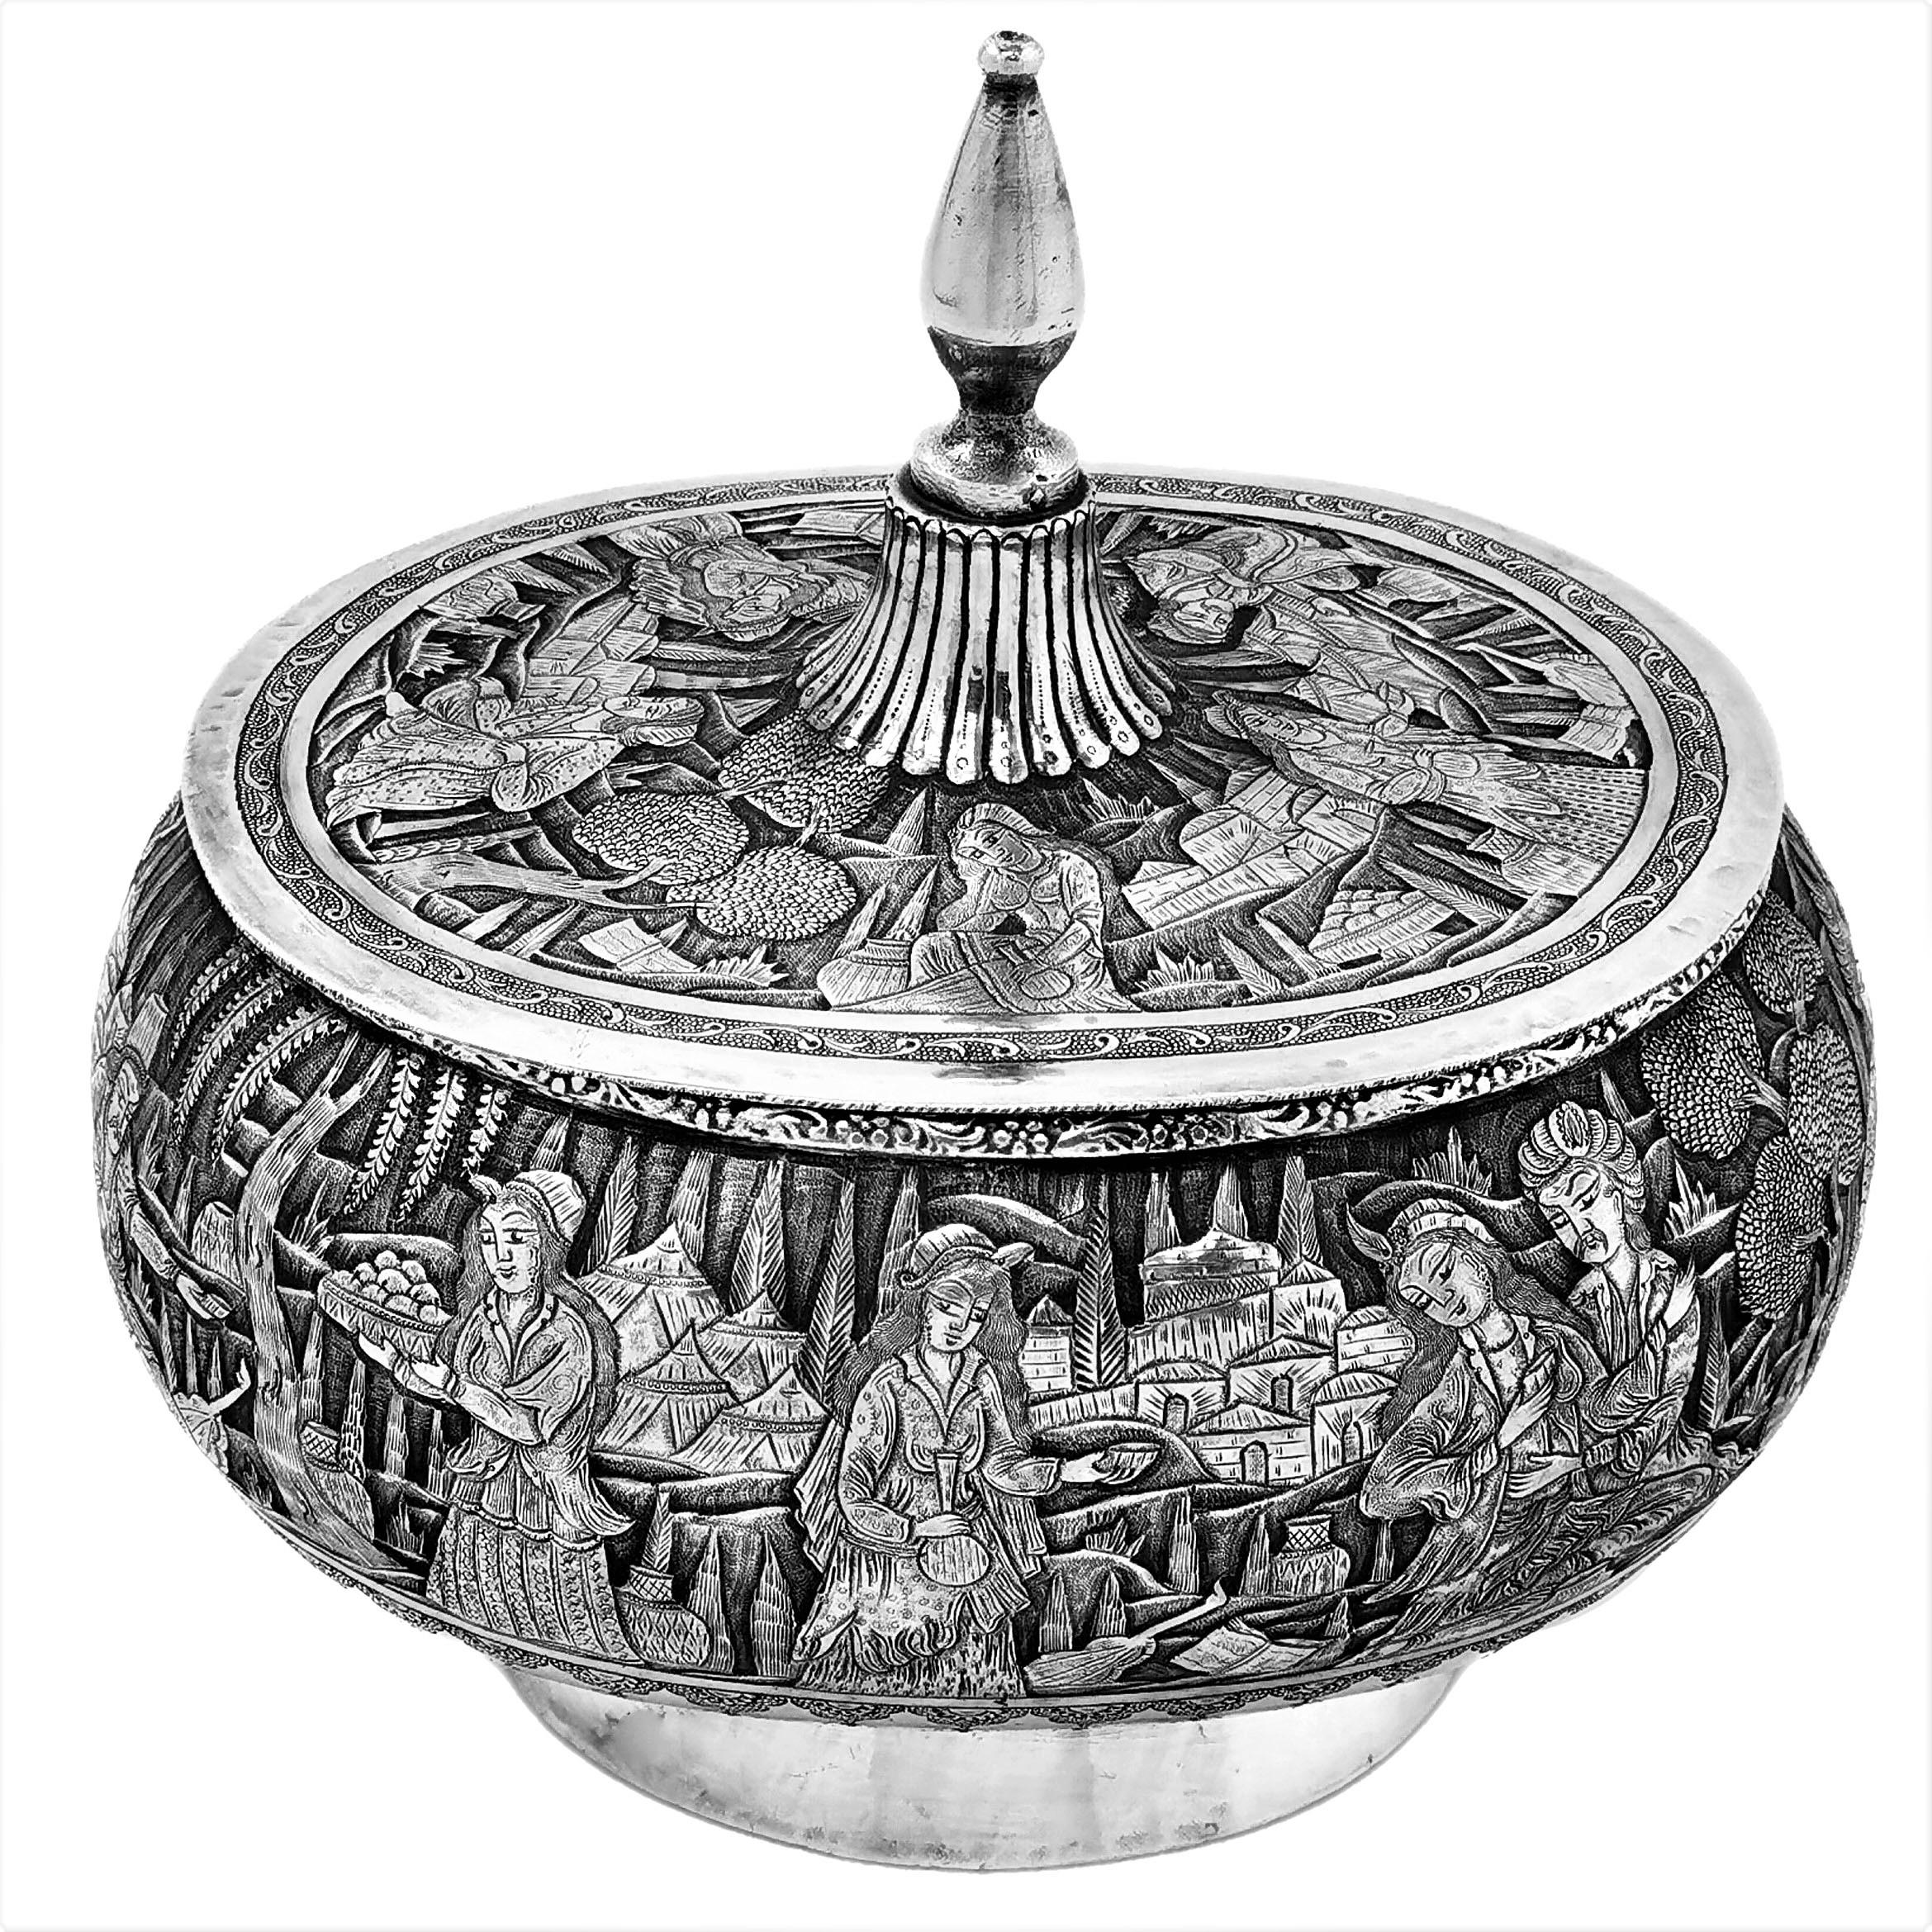 Ein schönes altes persisches Gefäß aus massivem Silber mit ovalem Deckel und einem hohen spitzen Deckel. Der Korpus der Dose und die Oberfläche des Deckels sind mit reichen, kunstvoll ziselierten Motiven verziert, die Figuren in einer